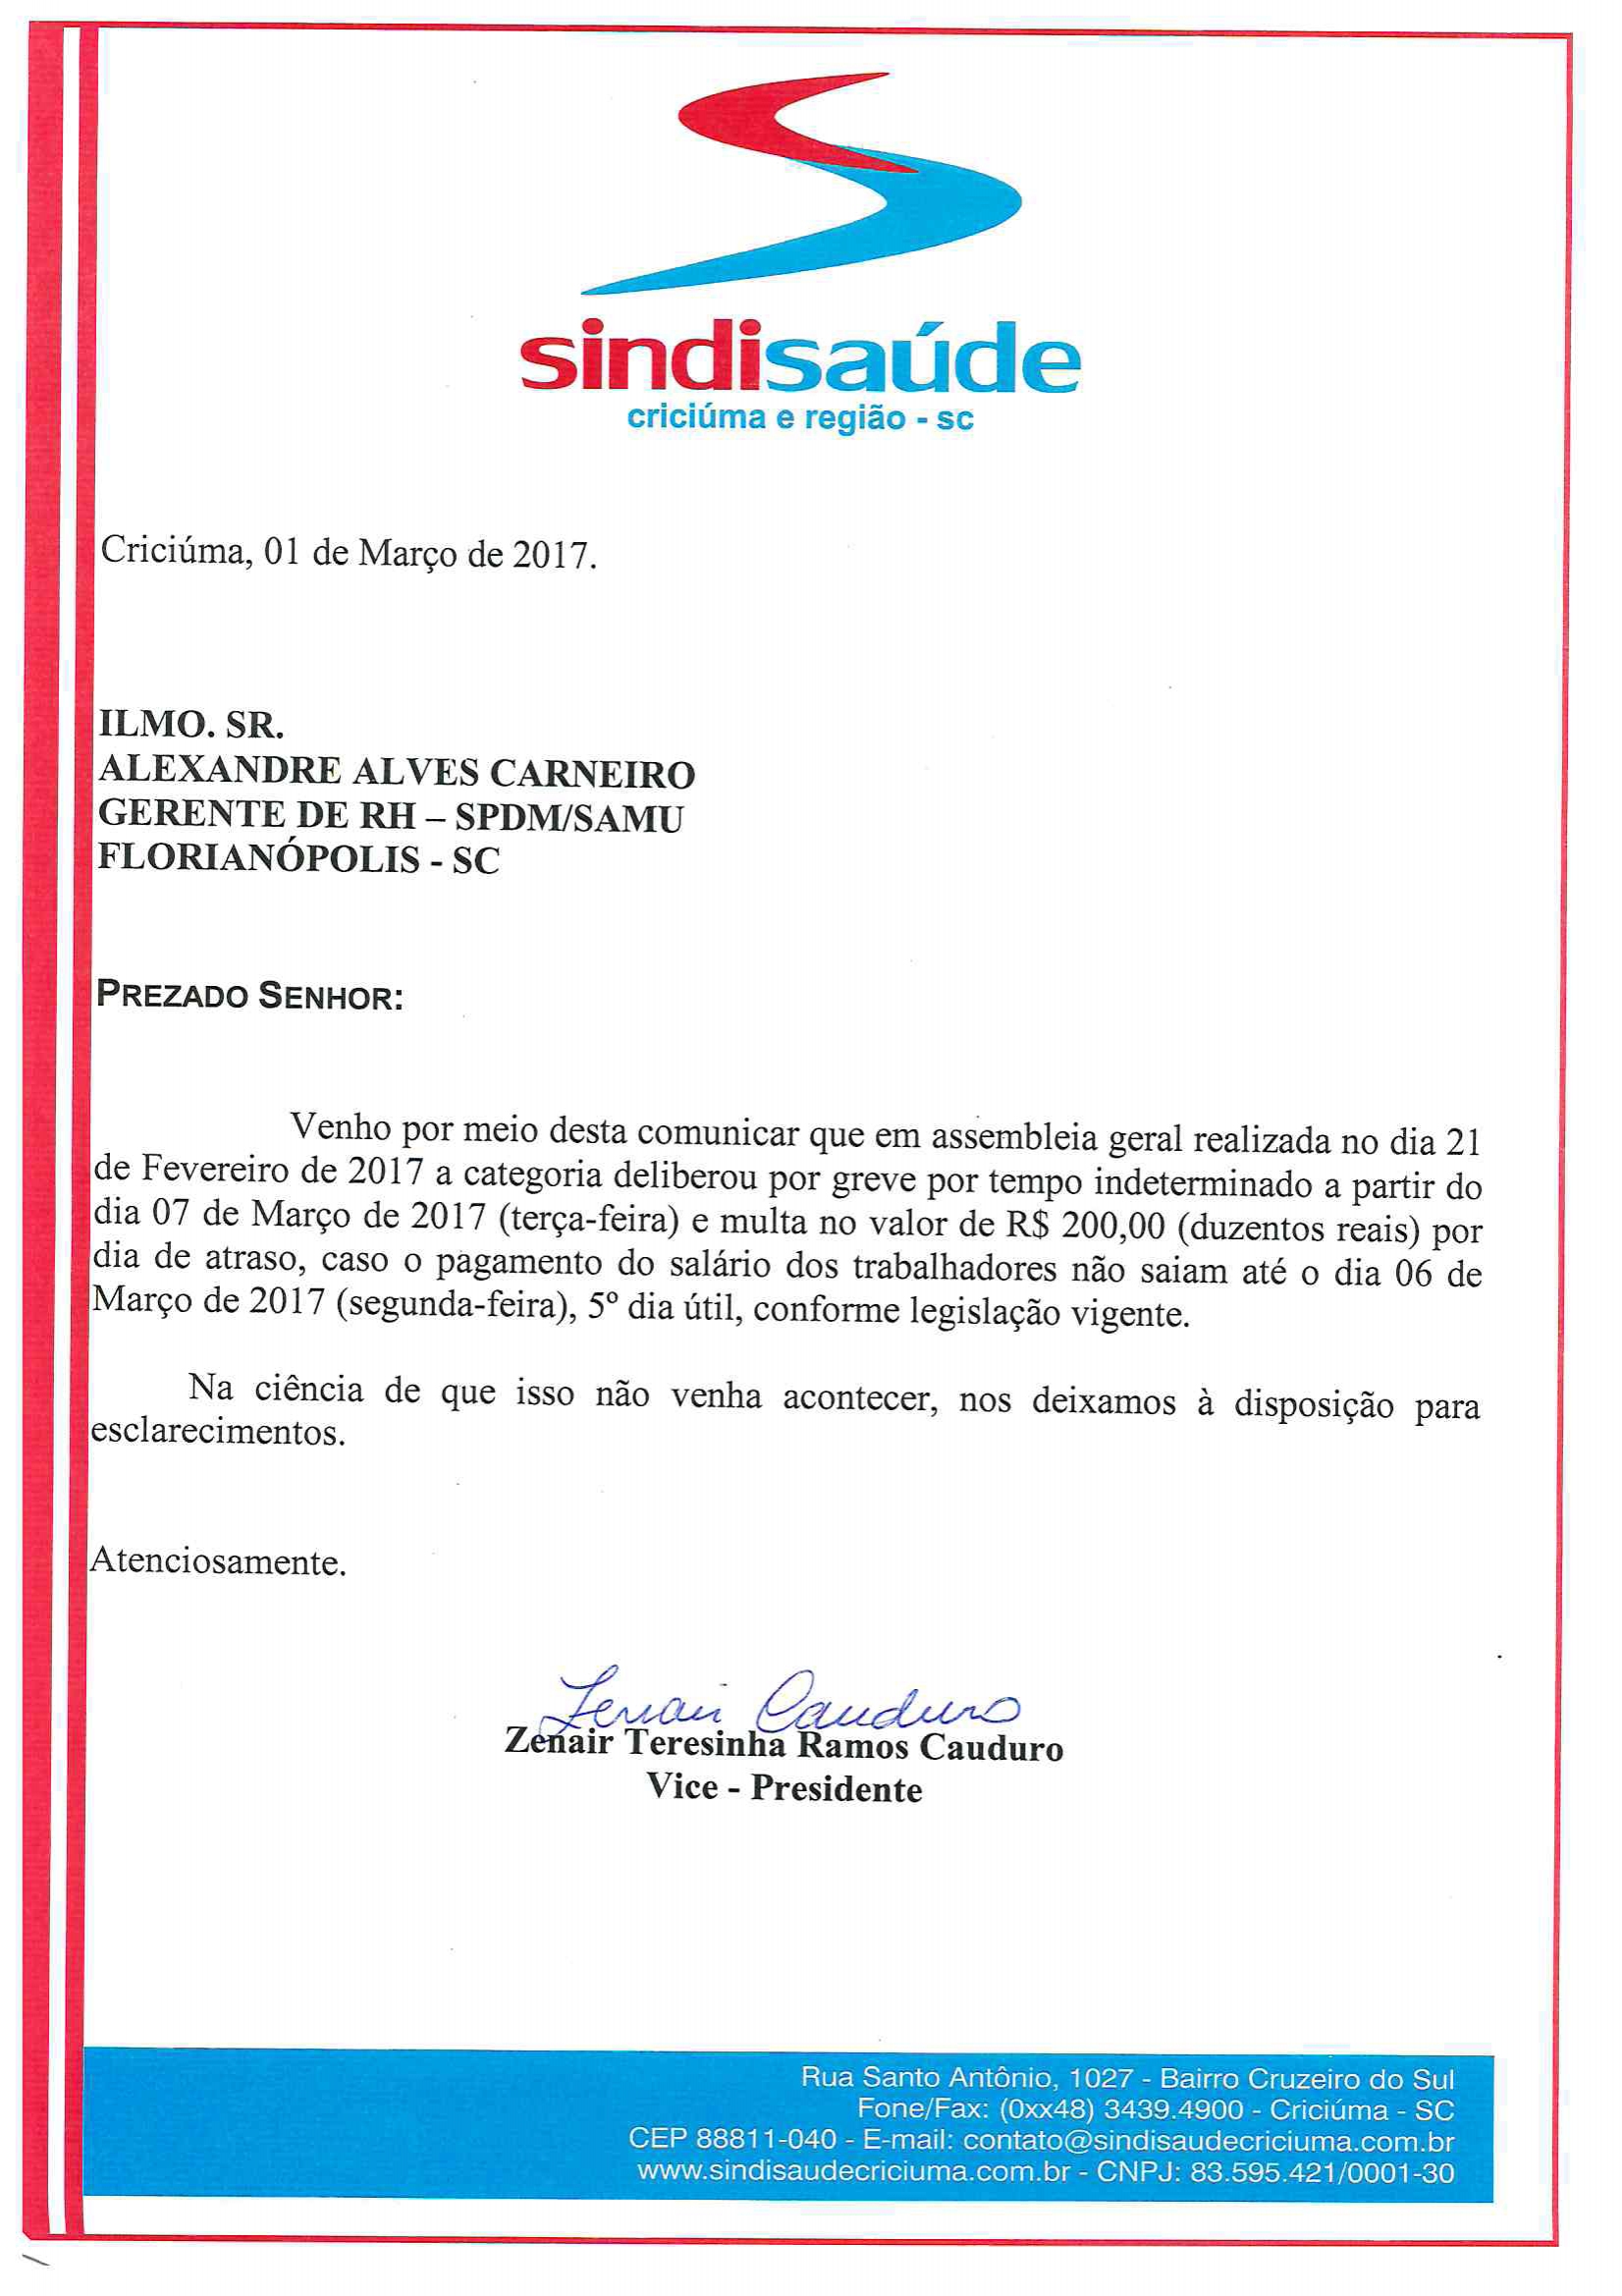 OFÍCIO COMUNICAÇÃO DE GREVE POR ATRASO DE SALÁRIOS SPDM - SAMU